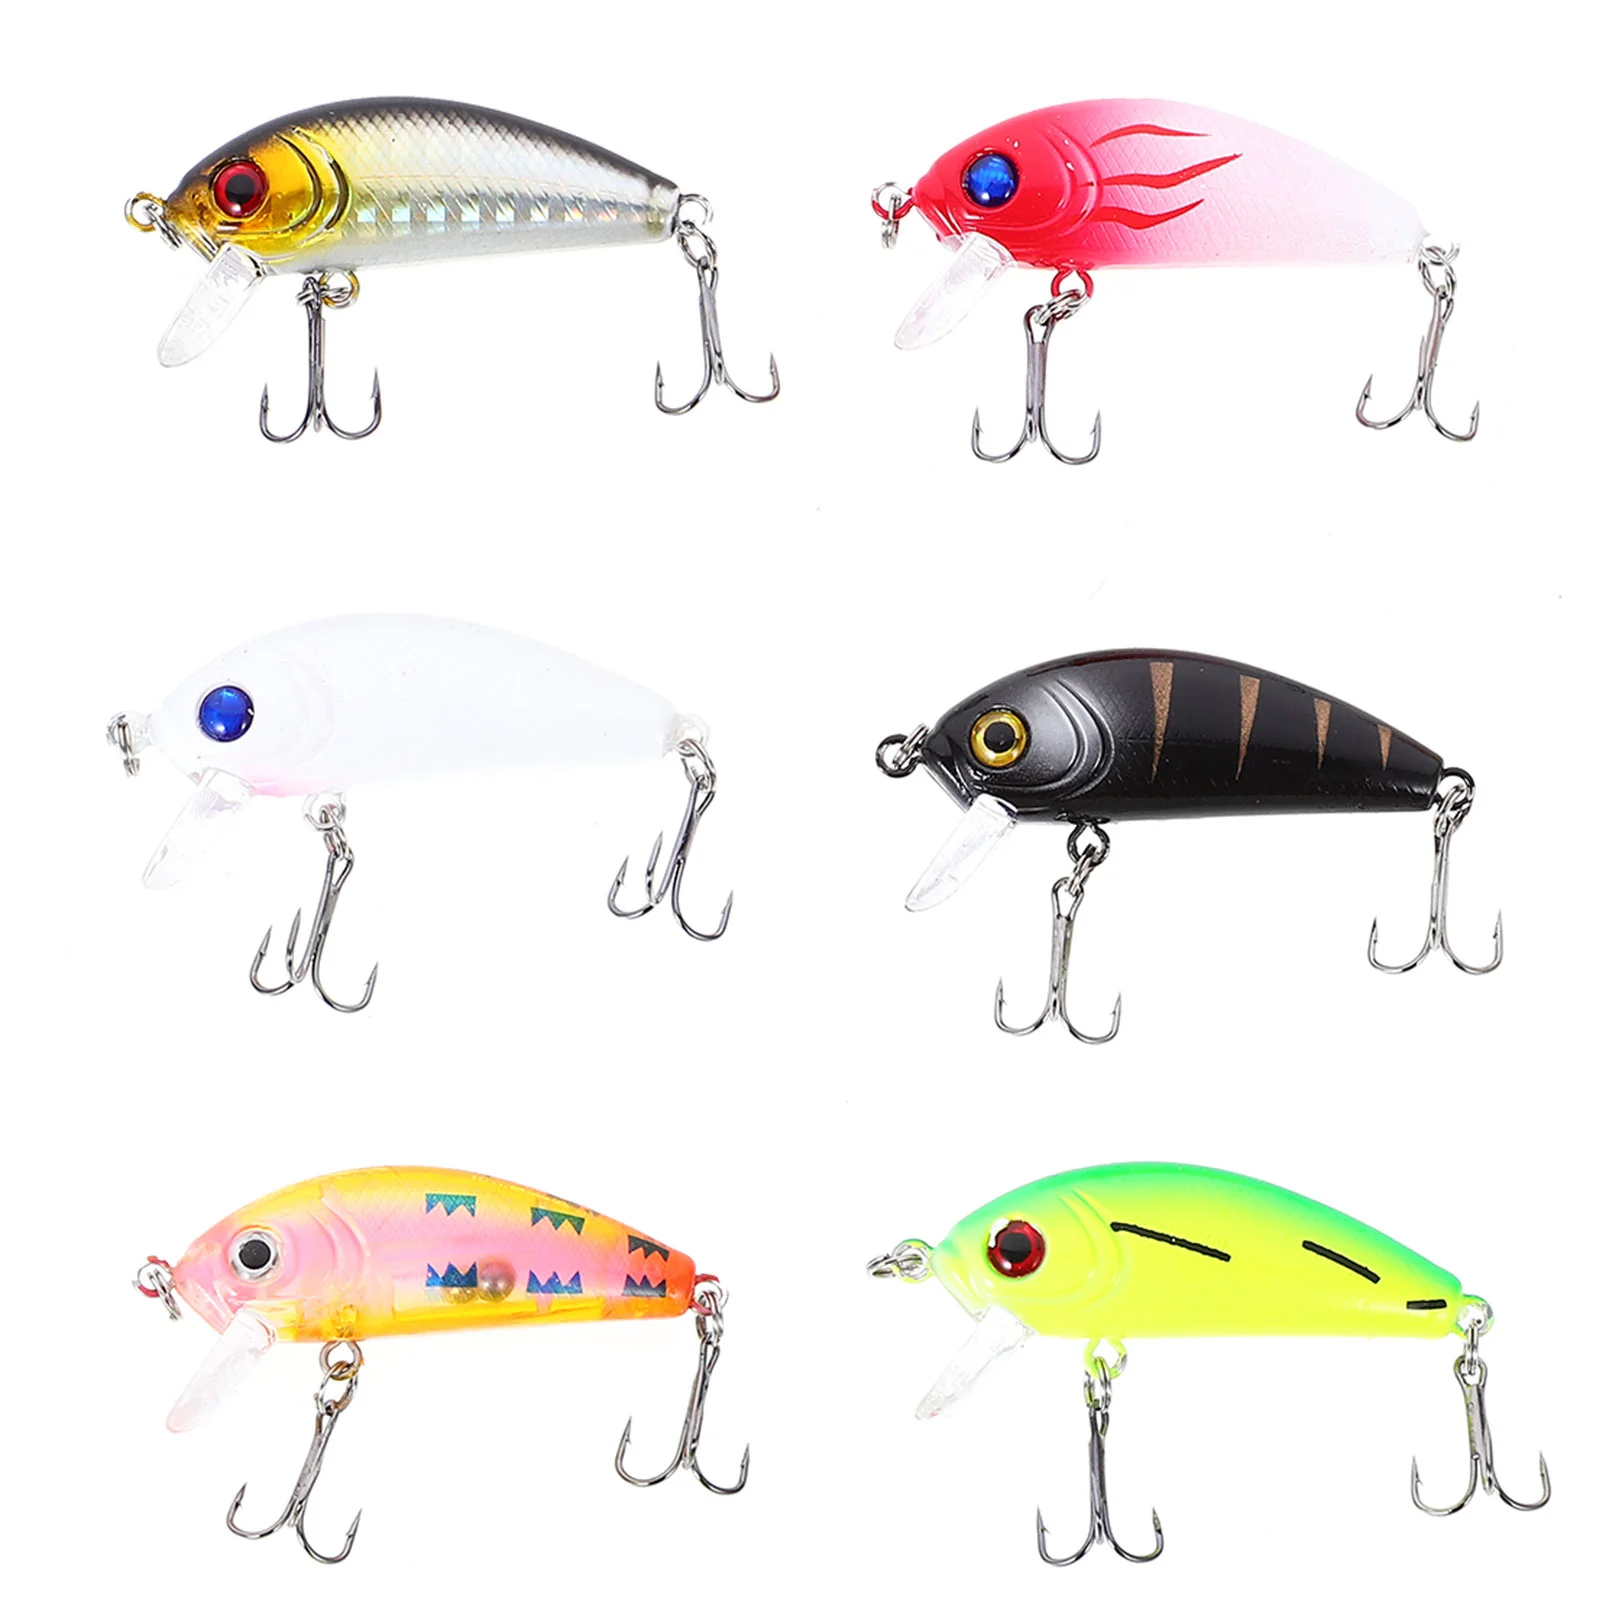 

6pcs 65cm/42g Fat Fish Artificial Lures Hook Fishing Accessories (Random Color)